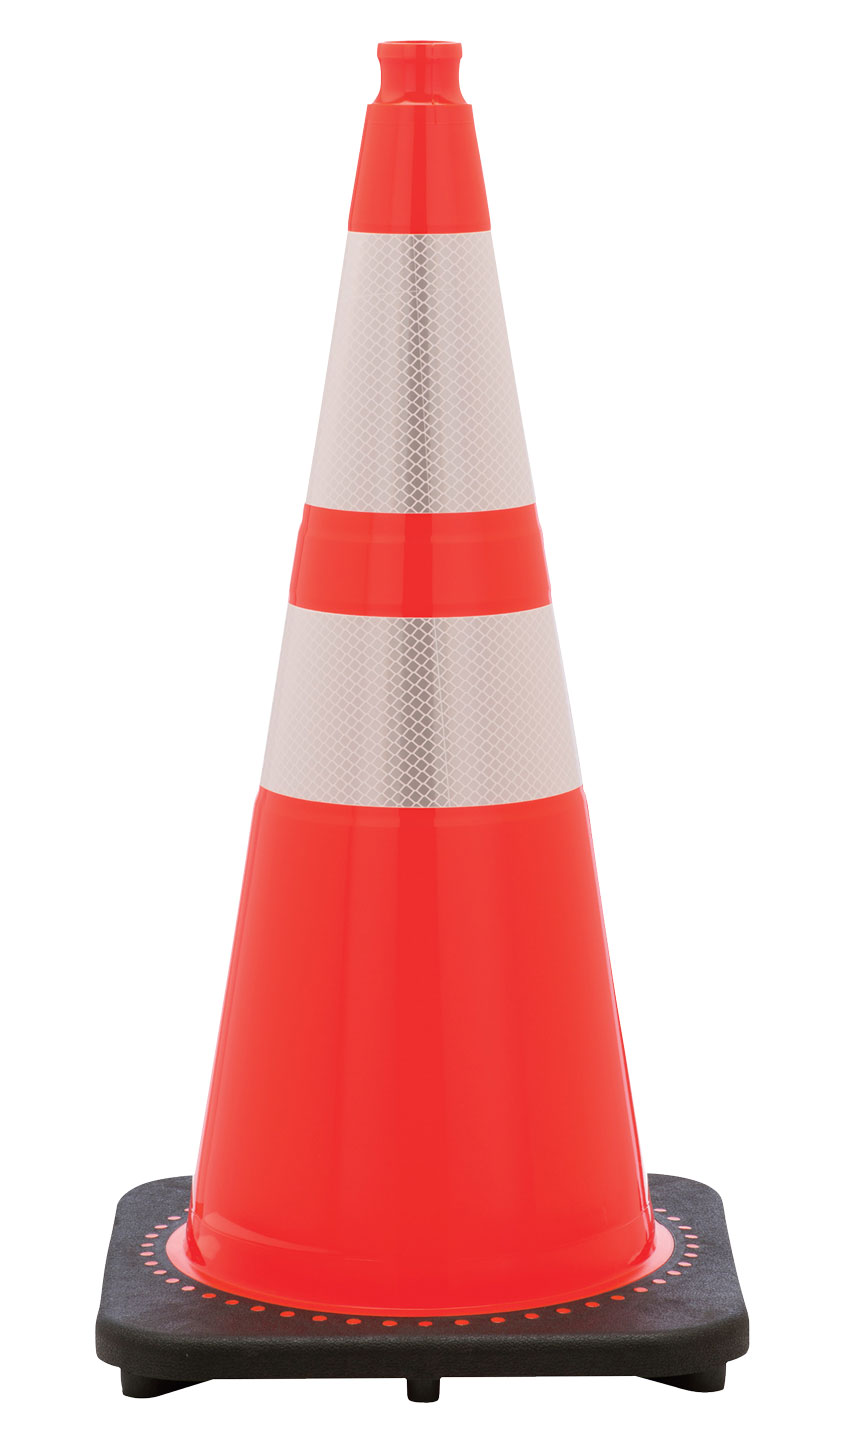 Traffic Cones  Green & Orange Road Safety Cones